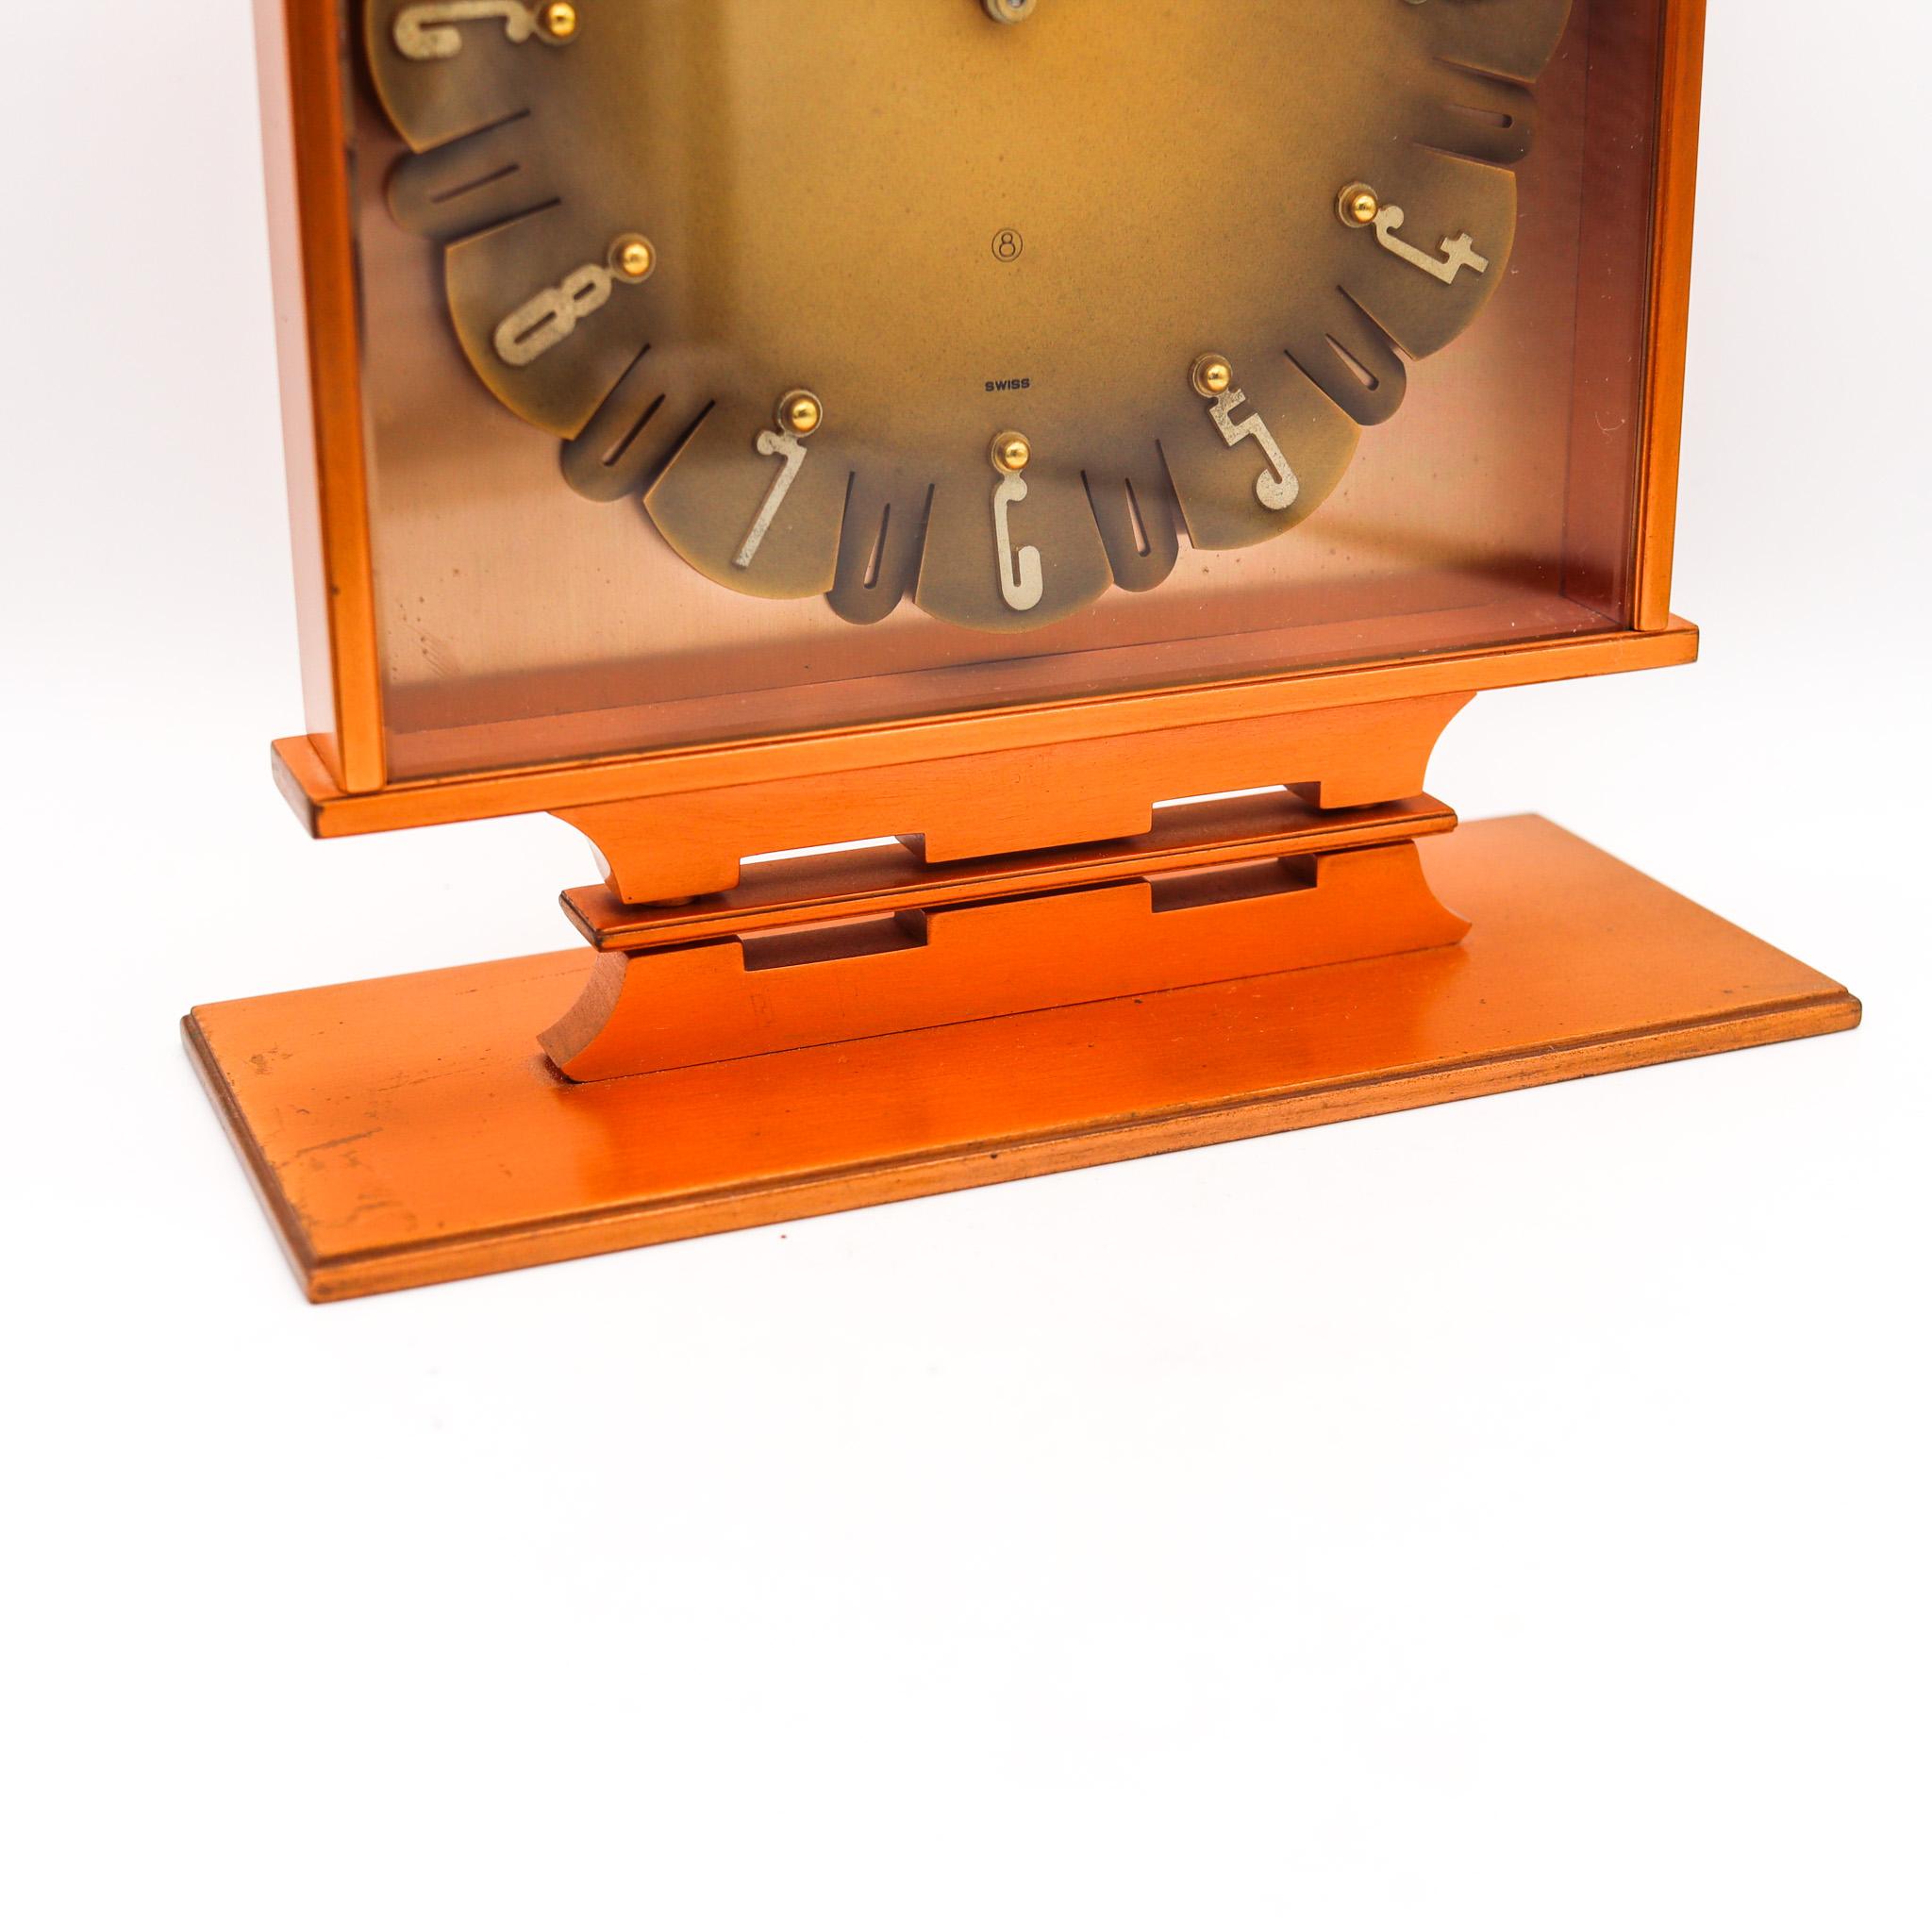 Horloge de bureau conçue par Jaeger-LeCoultre.

Fabuleuse horloge de bureau géométrique, créée en Suisse par les horlogers de Jaeger-LeCoultre, dans les années 1950. Cette horloge est très rare et a été réalisée avec des motifs rétro-modernistes en